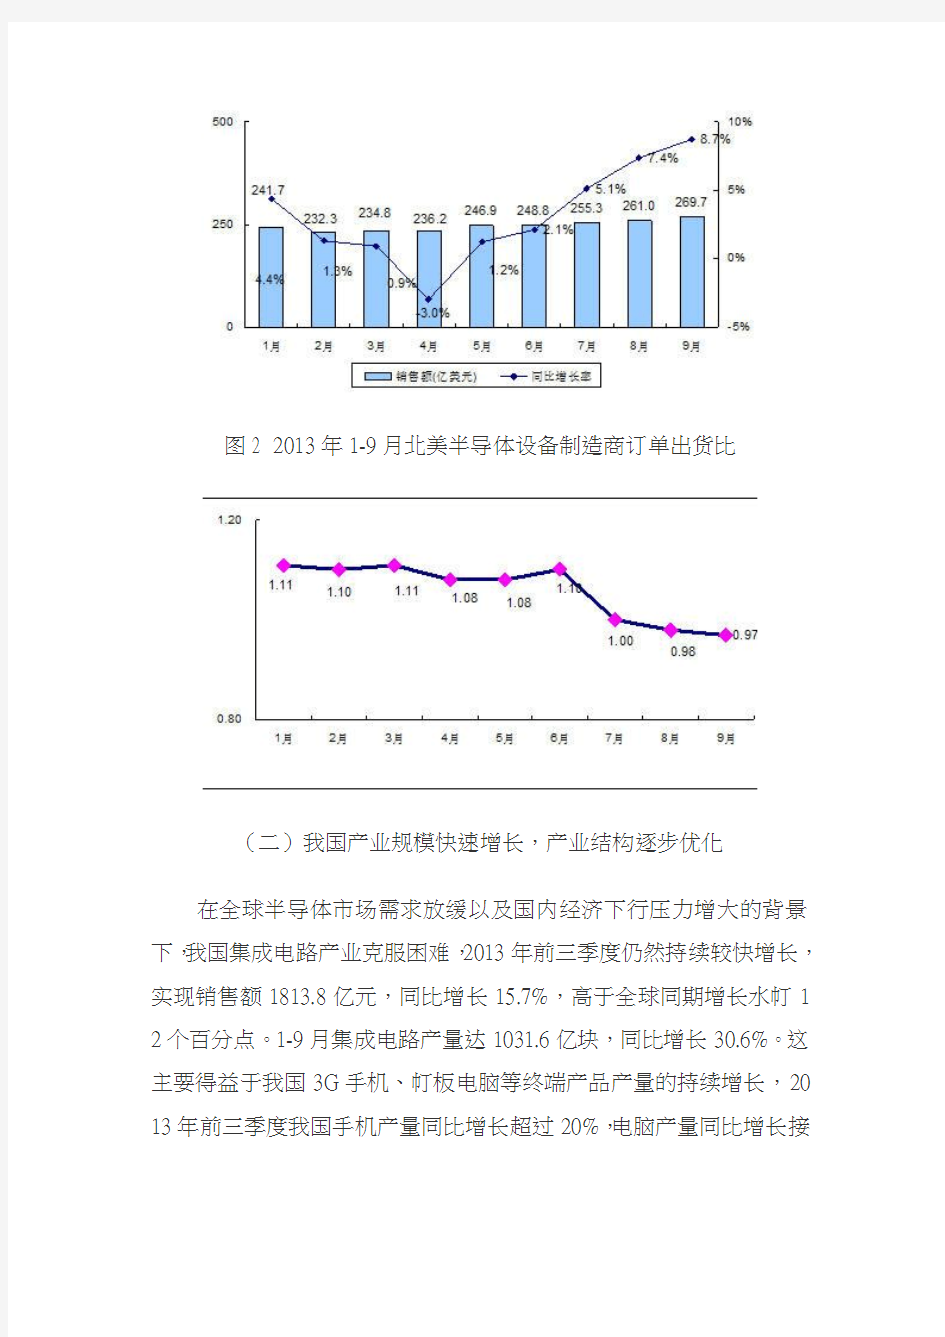 2014年中国集成电路产业发展形势展望